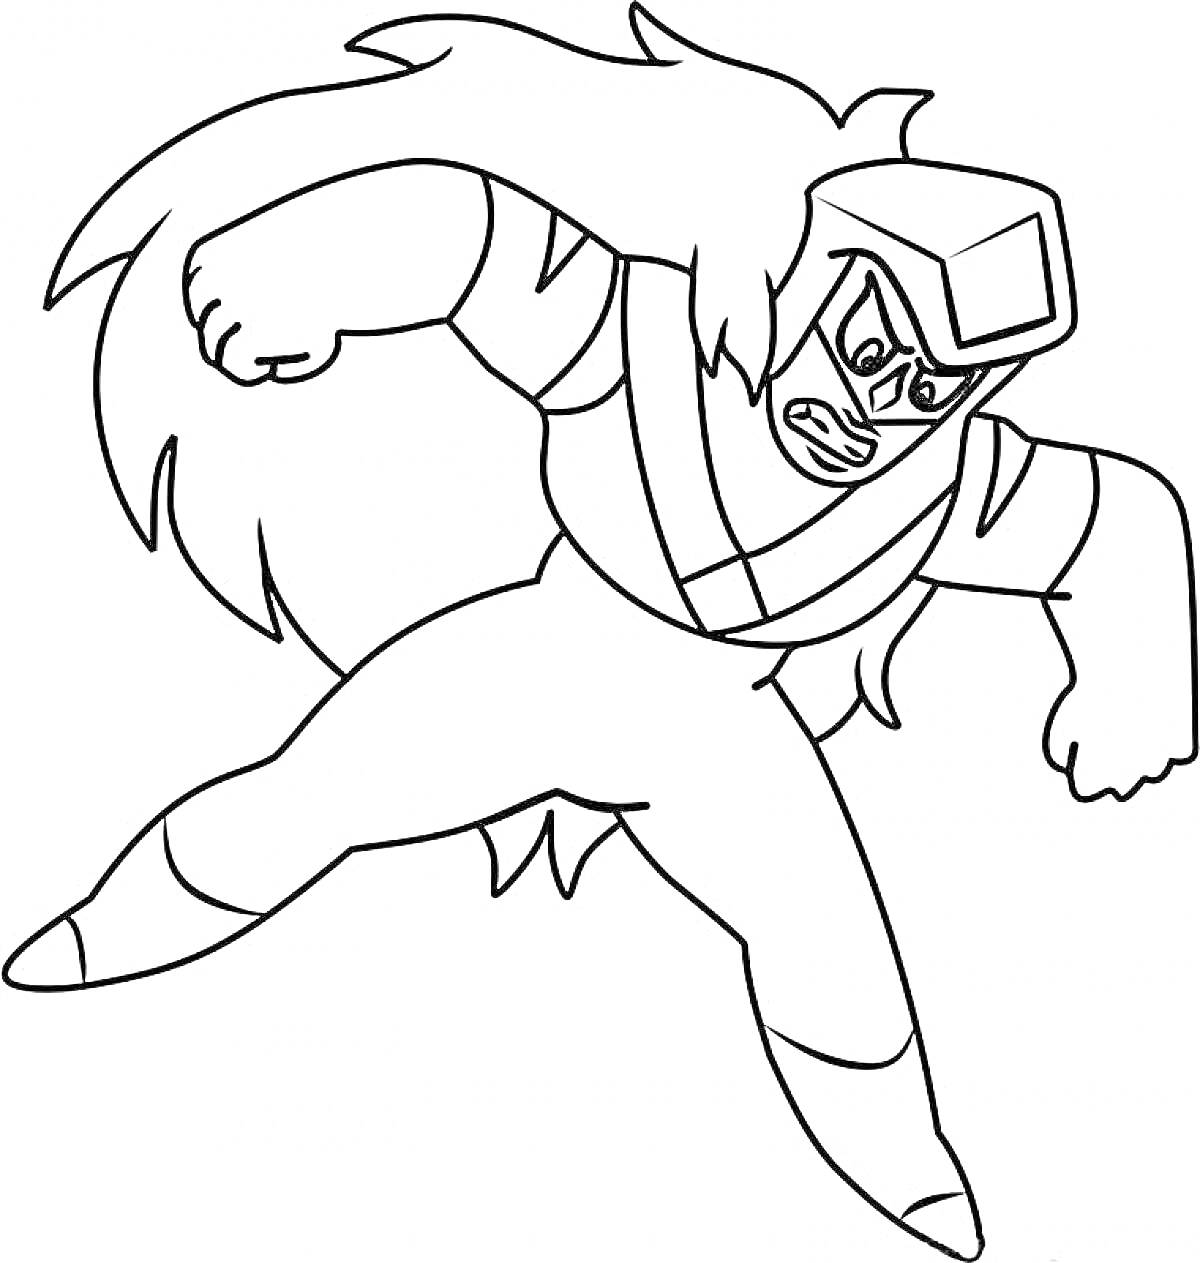 Раскраска Грозный персонаж из Вселенной Стивена с длинными волосами и защитной маской, готовый к атаке